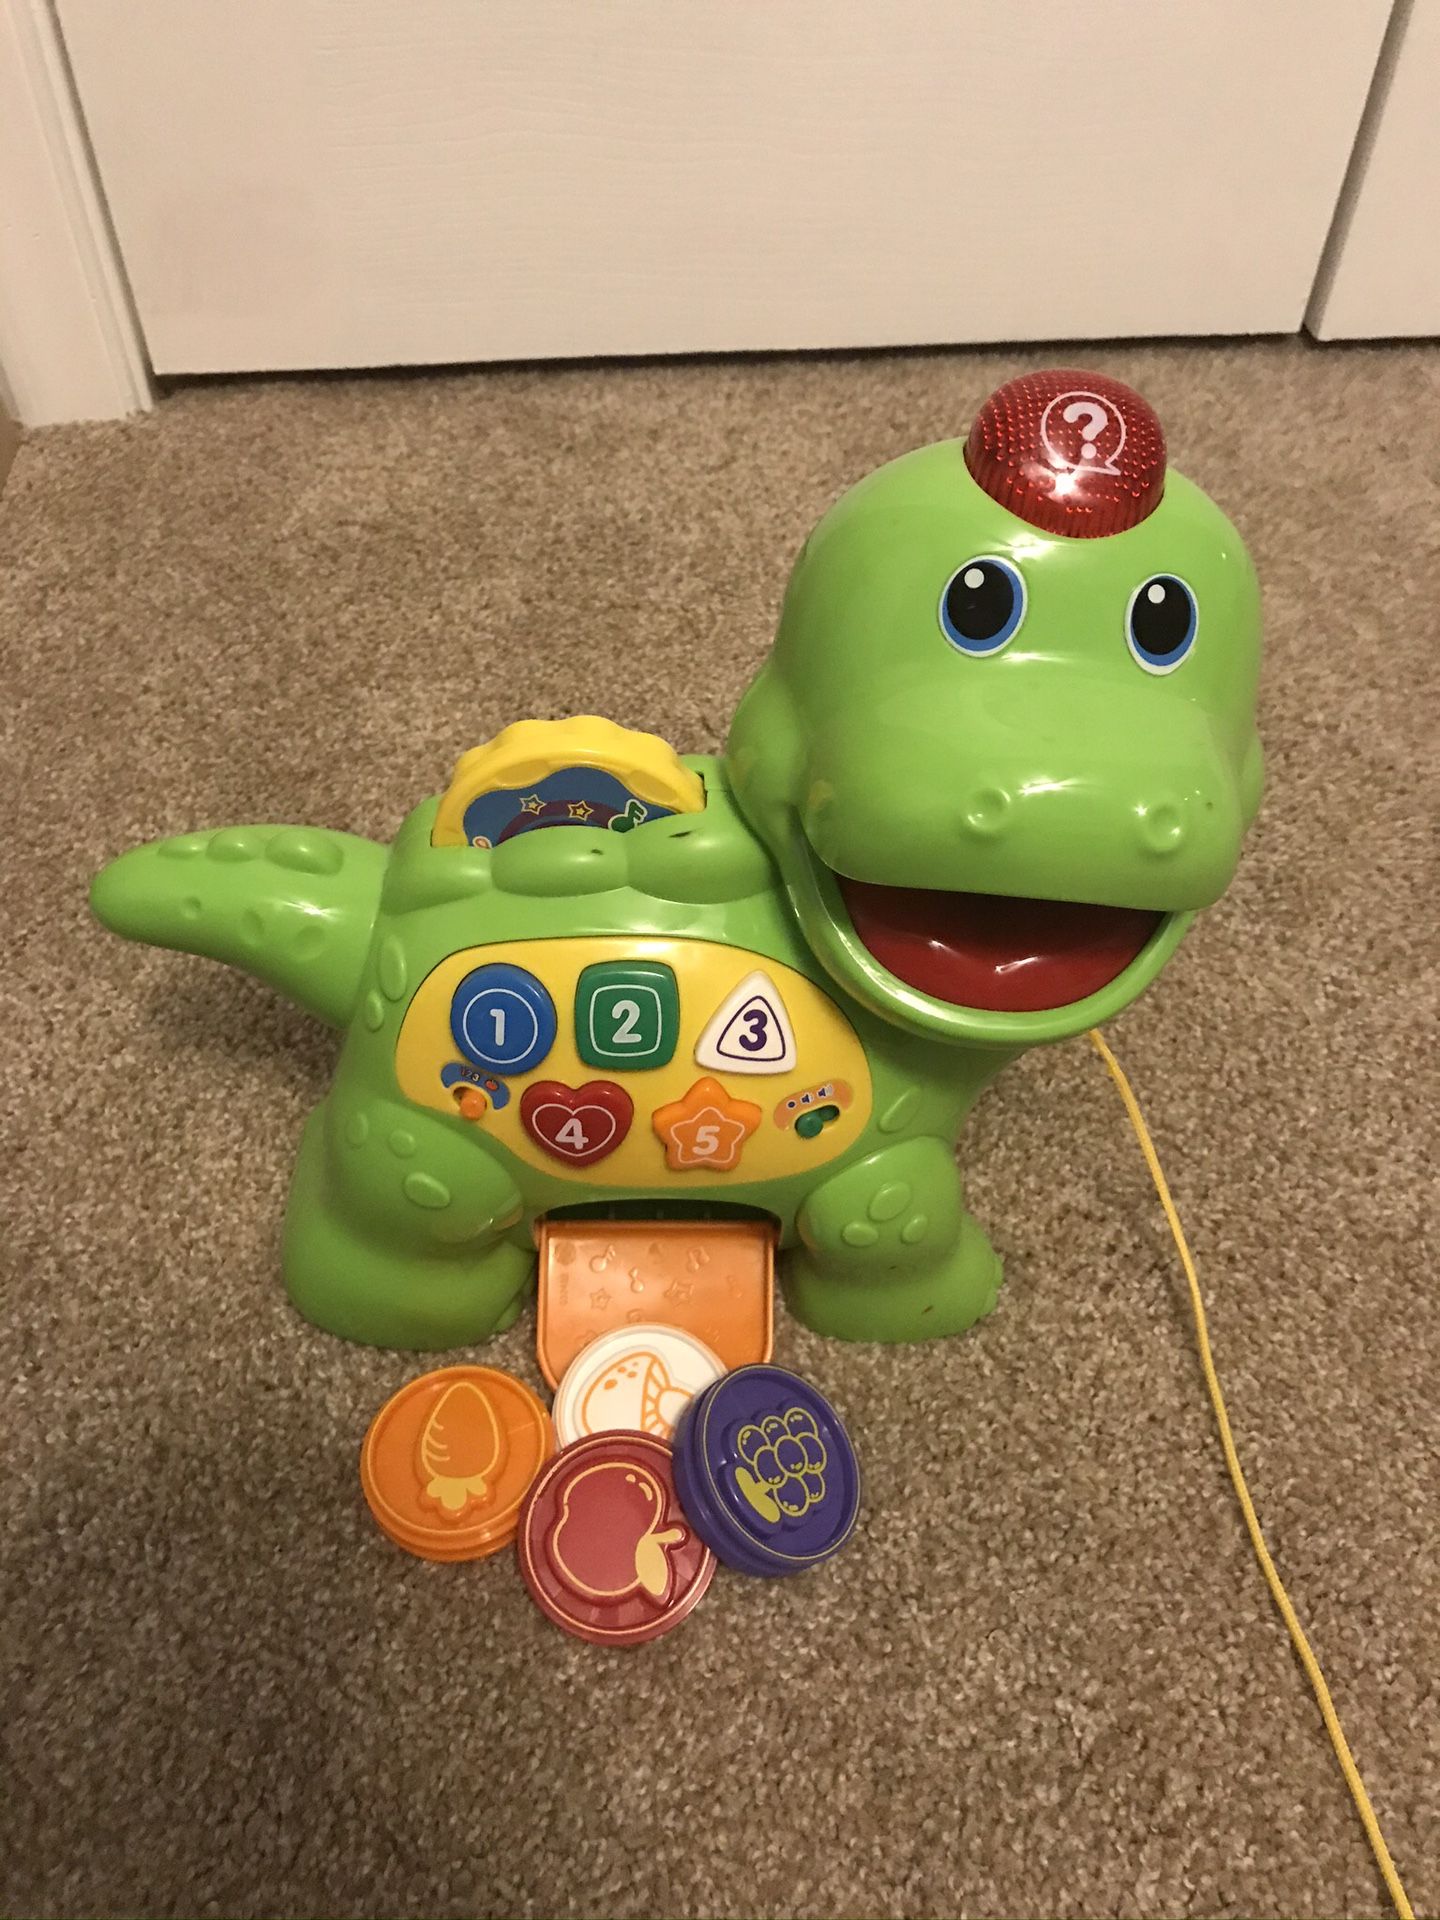 Baby & Toddler Toys